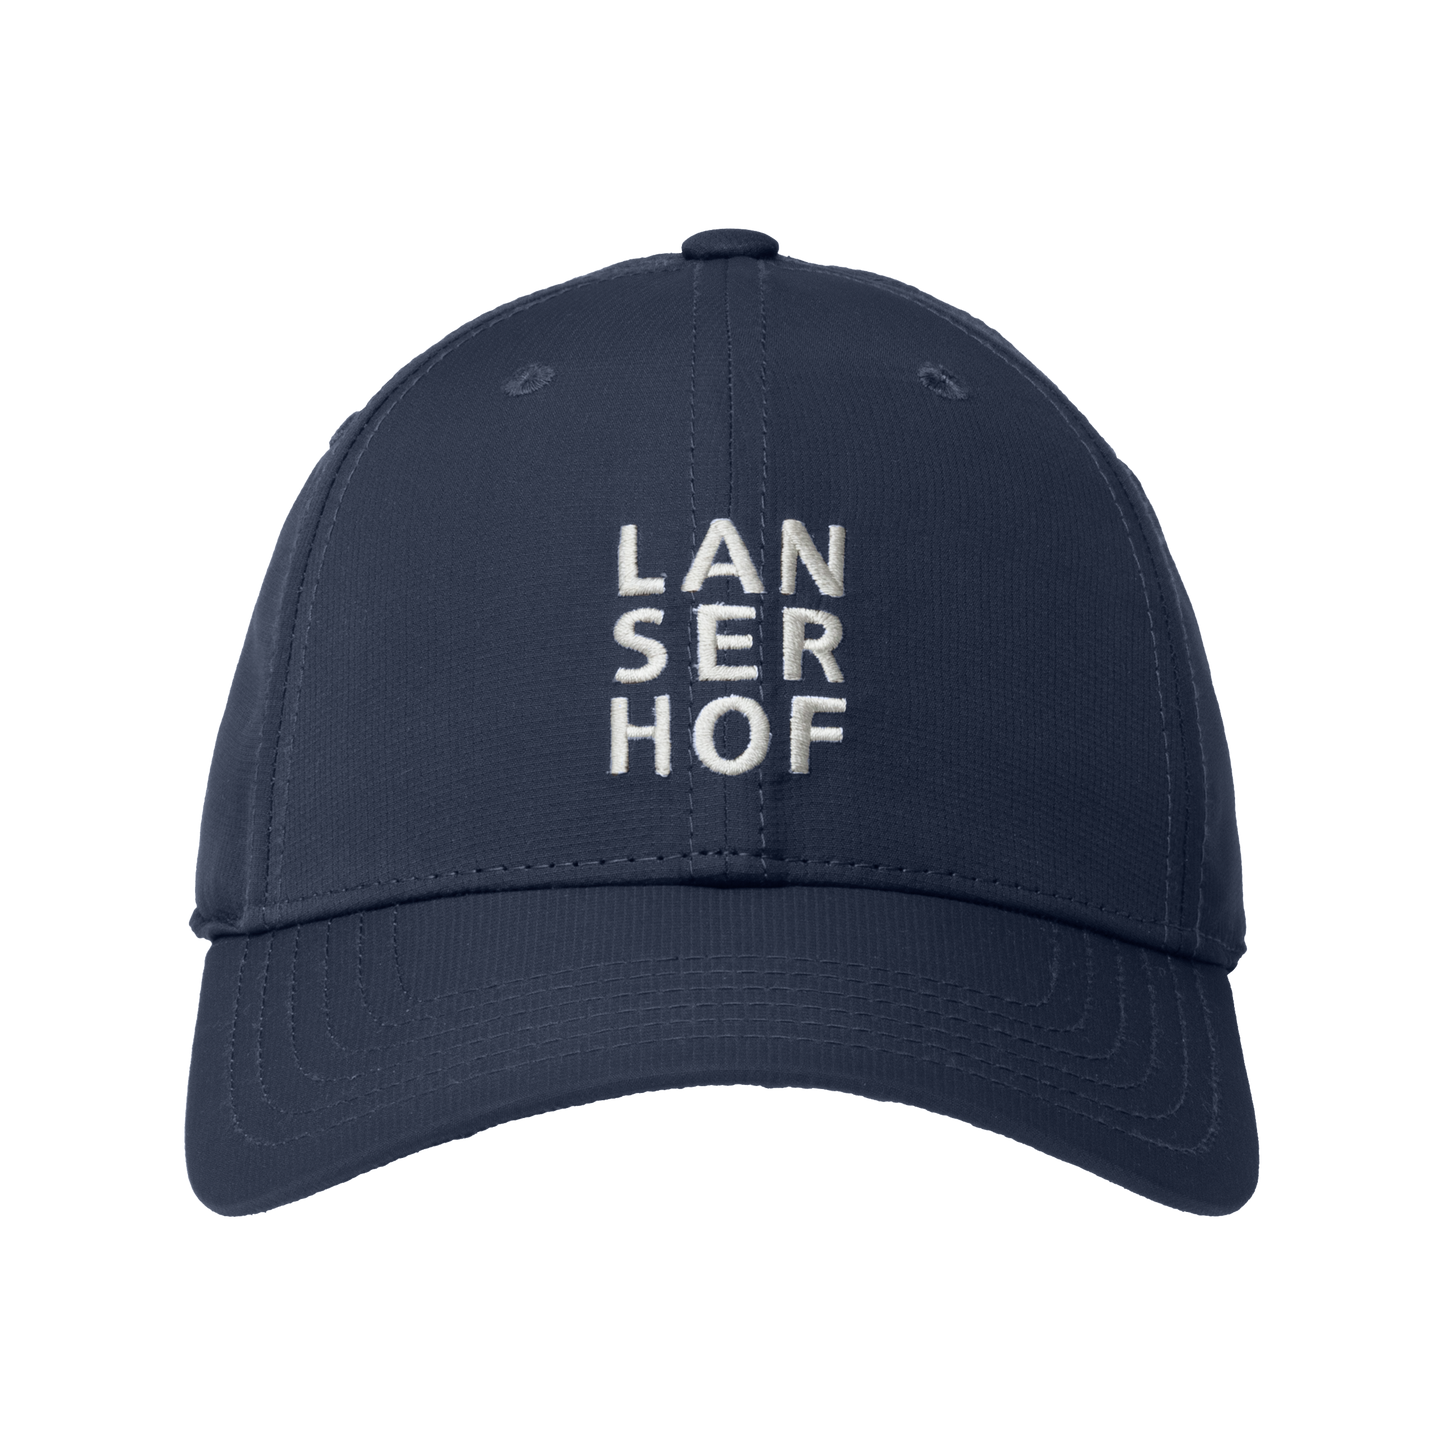 Lanserhof cap blue